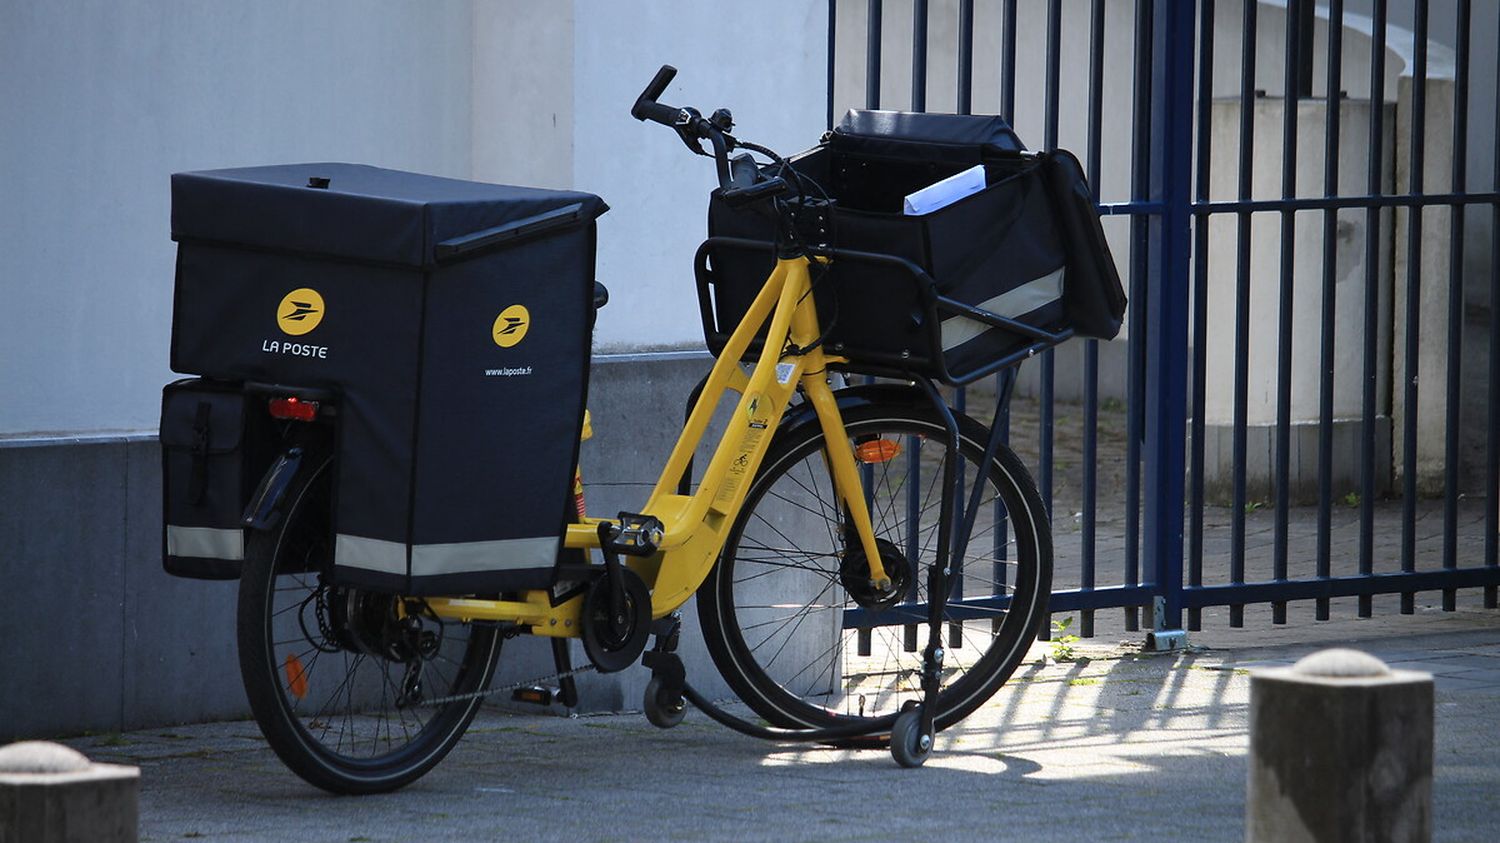 Vélo électrique d'un livreur La Poste garée